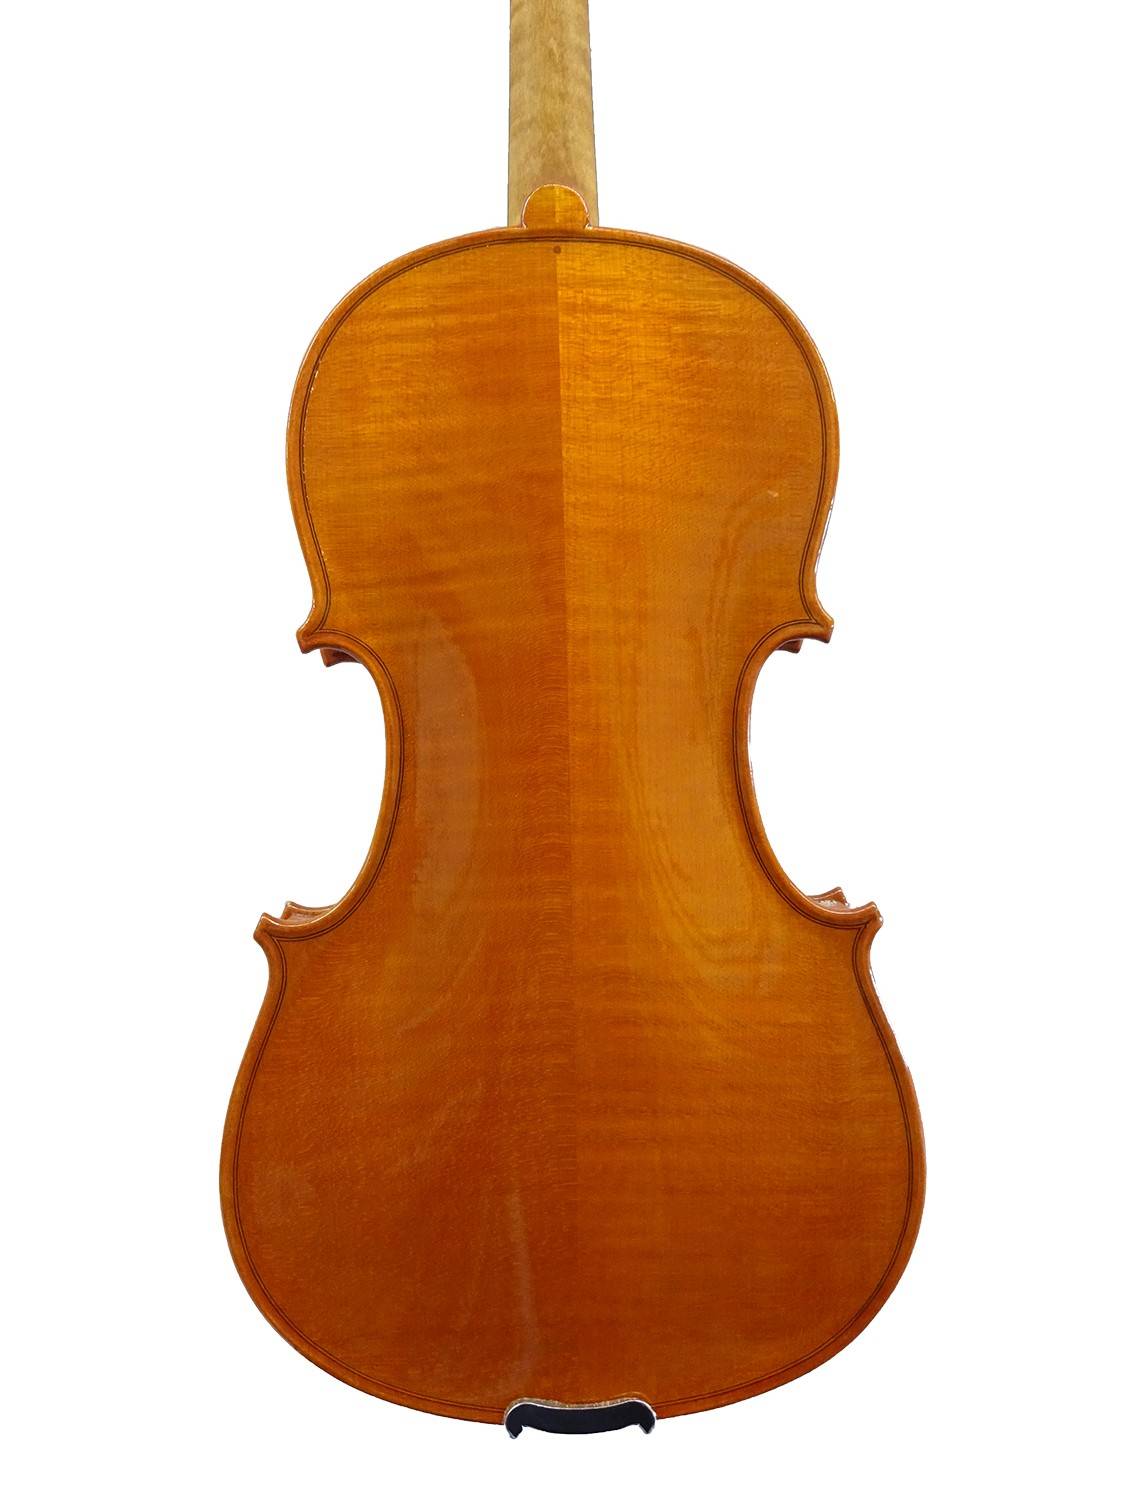 Violine aus deutscher Fertigung Werkstatt mezzo-forte